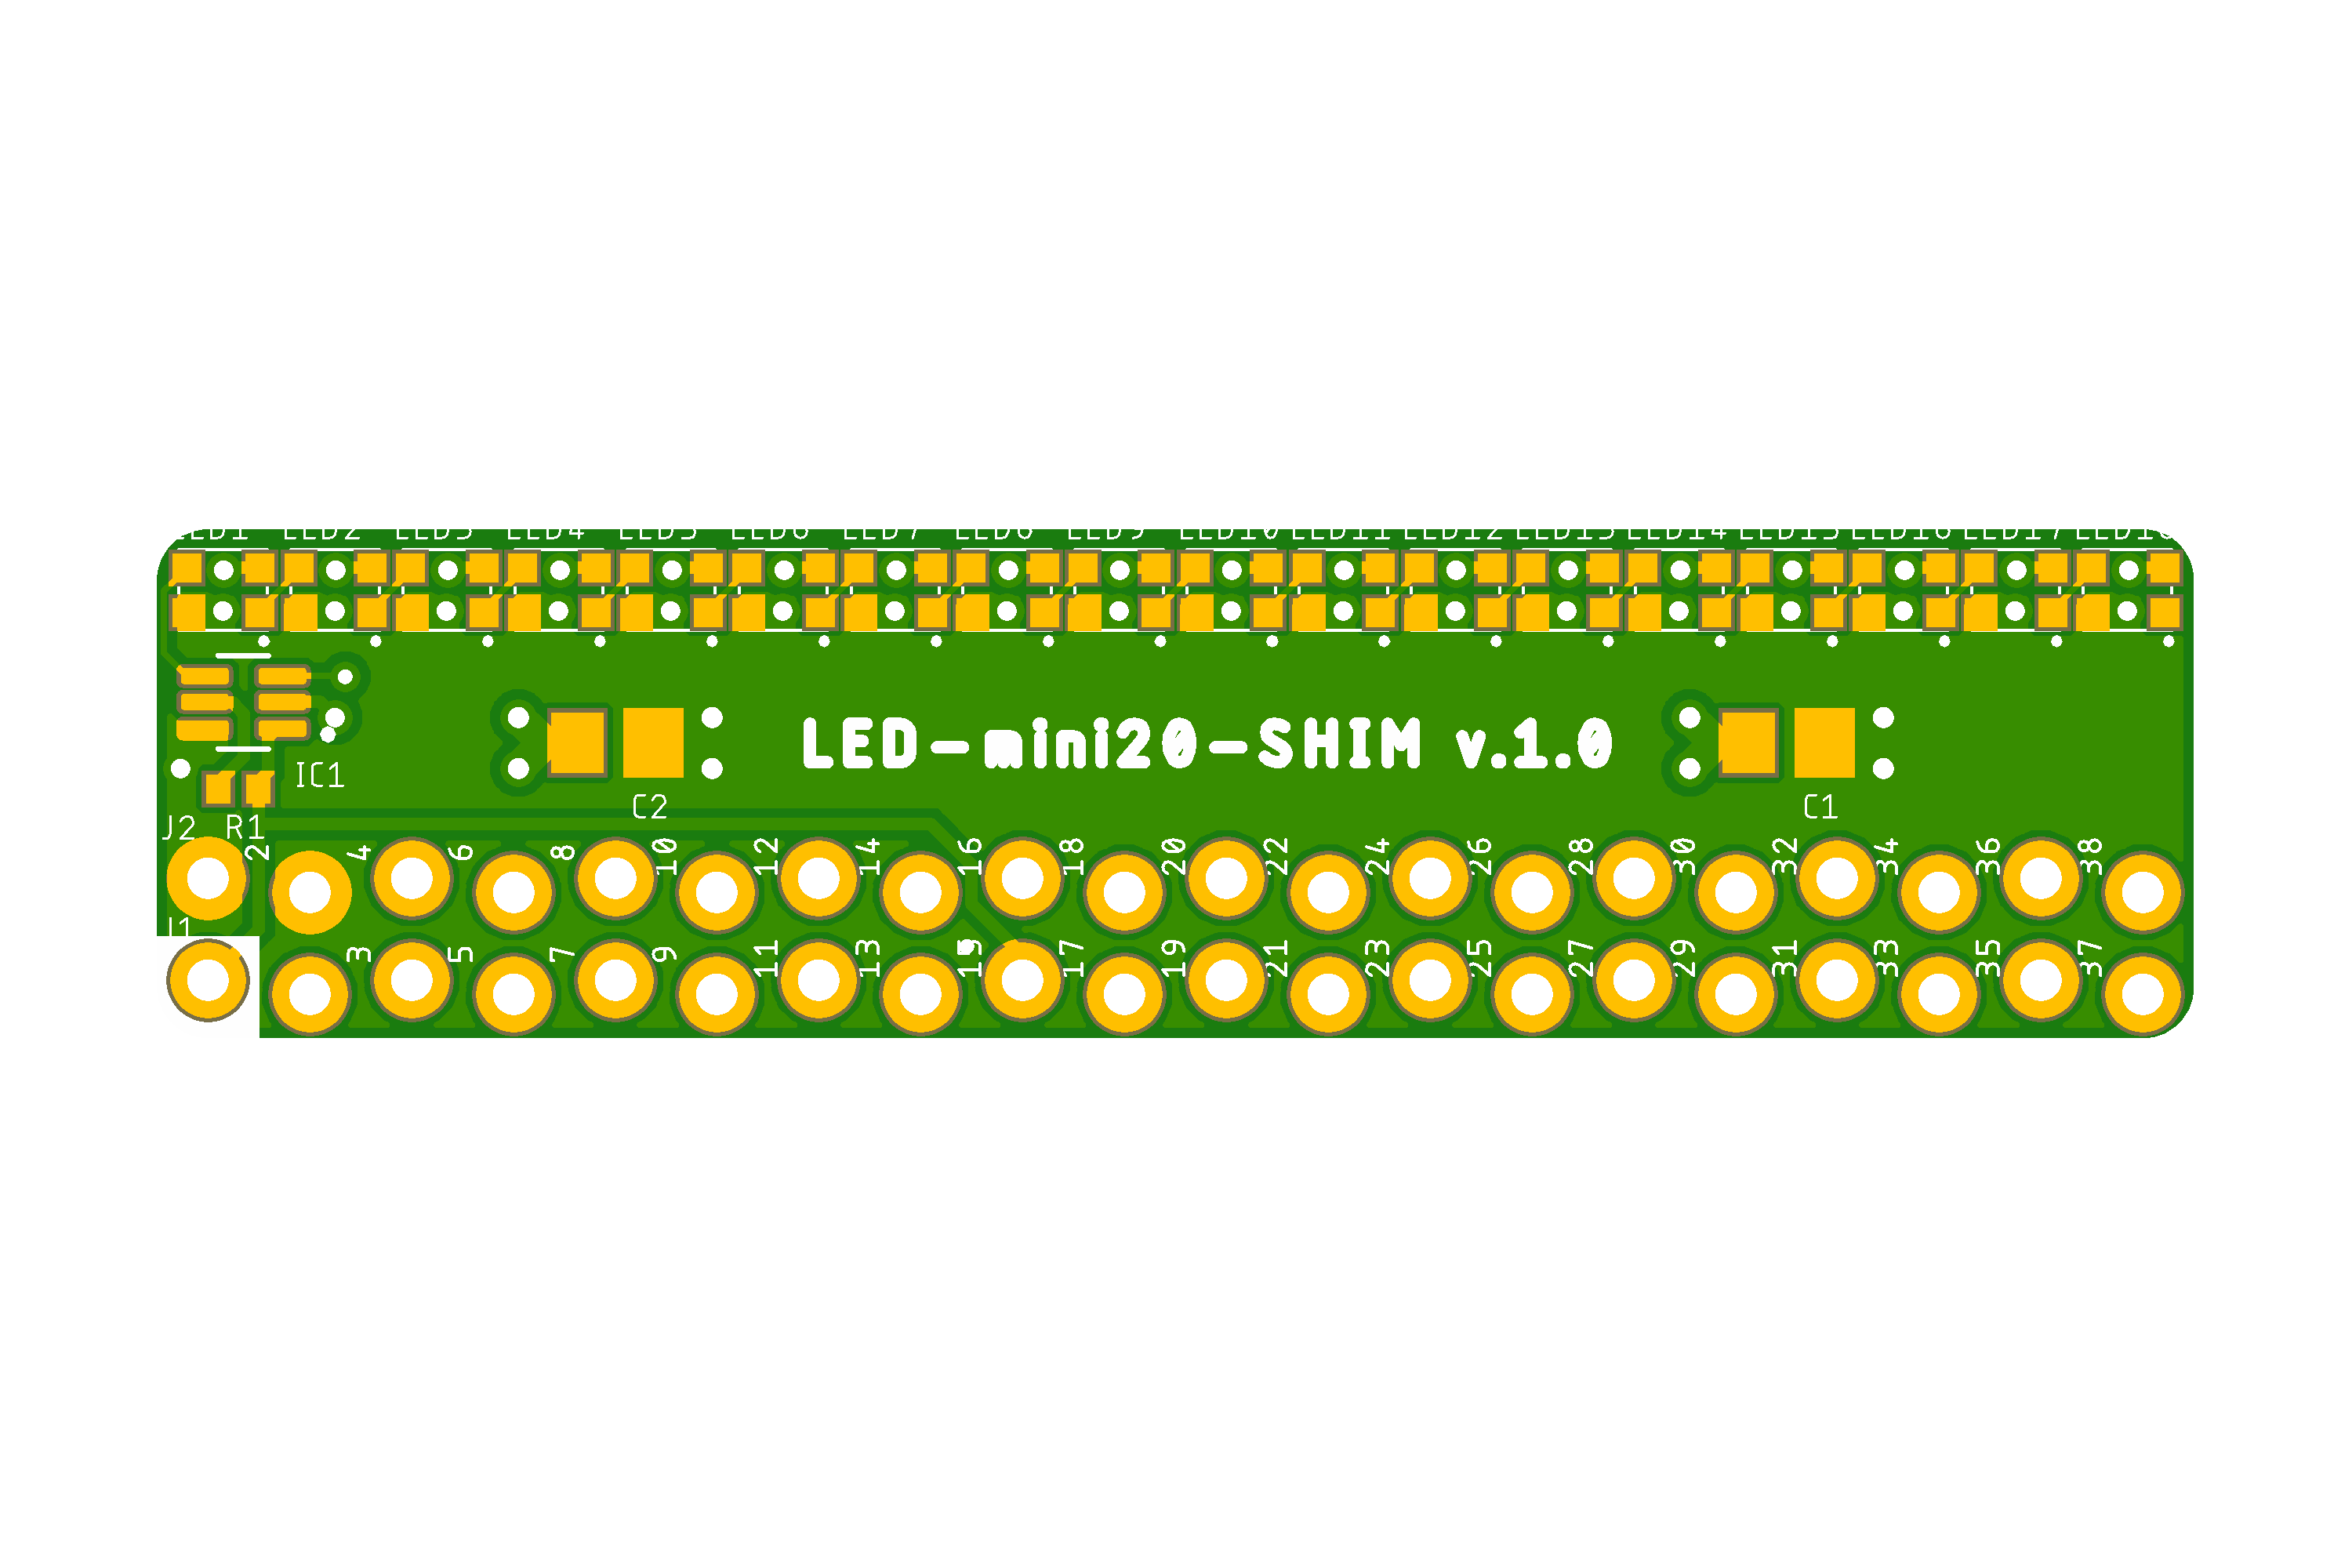 LED-mini20-SHIM preview